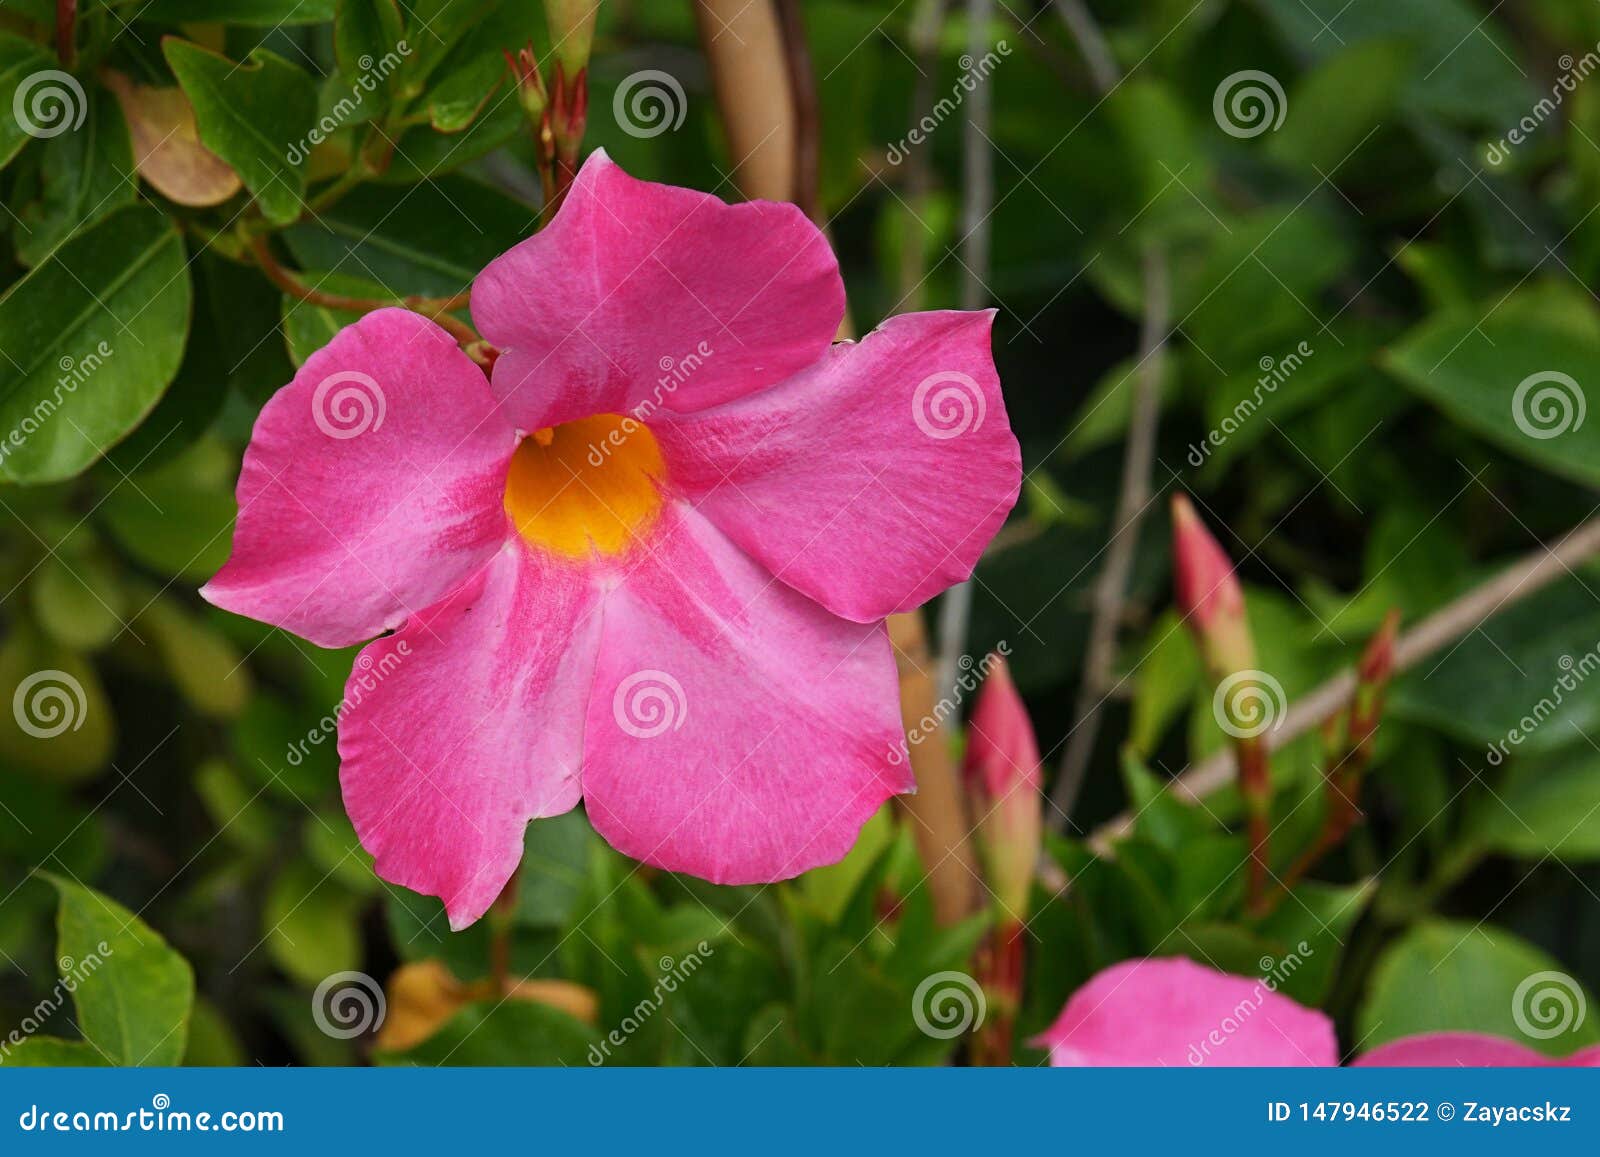 Fleur Tropicale Rose En Forme De Trompette Avec Jaune, Centre De Fleurs,  Poussant En Serre Photo stock - Image du bourgeons, rose: 147946522